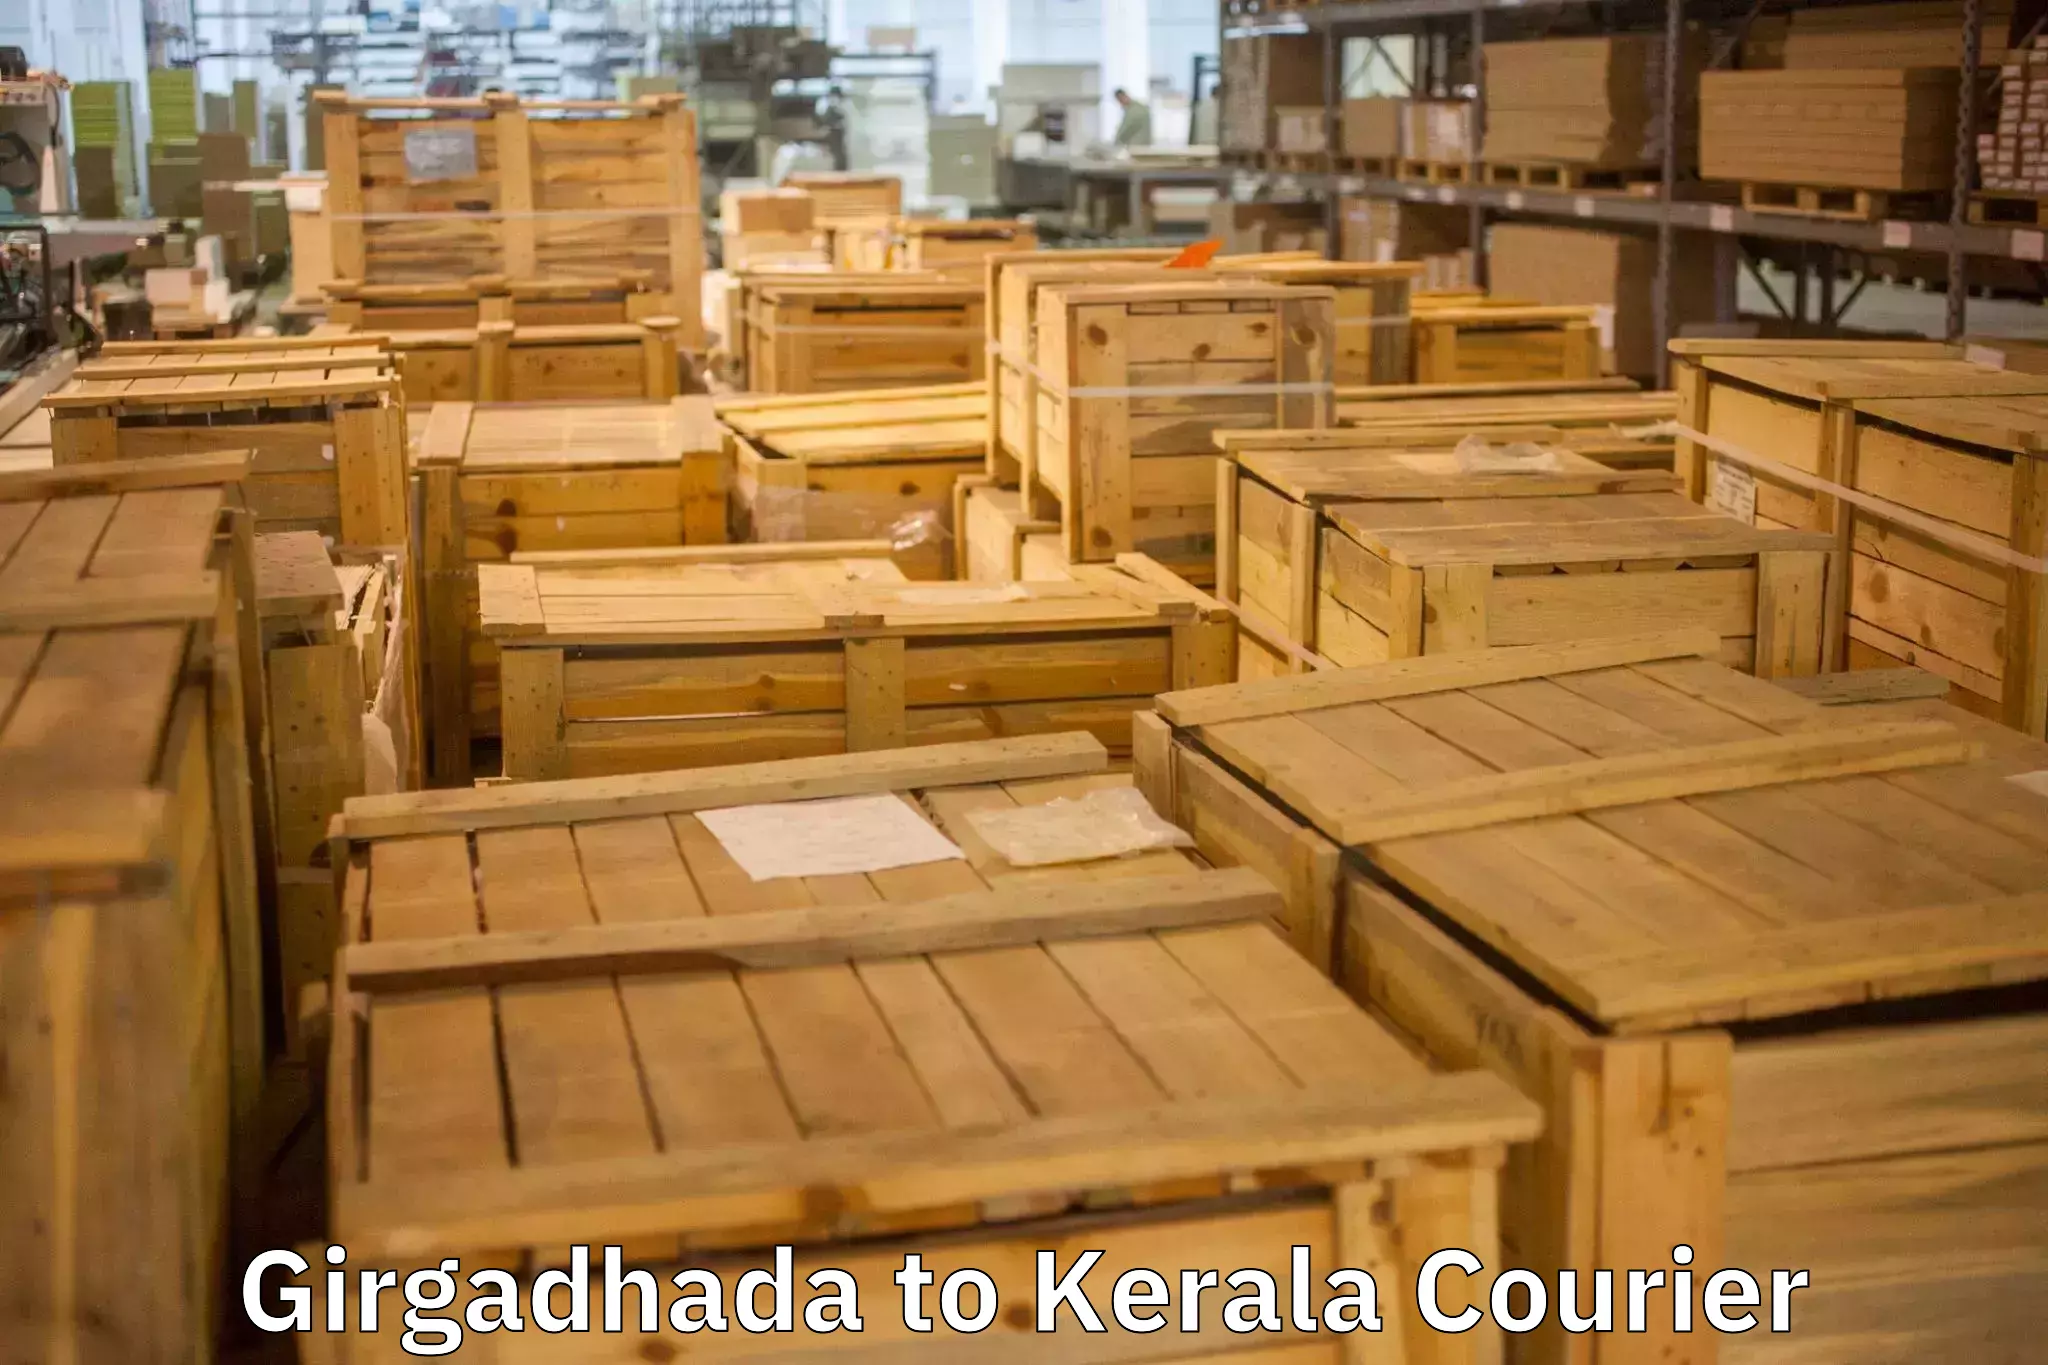 Furniture logistics Girgadhada to Kerala